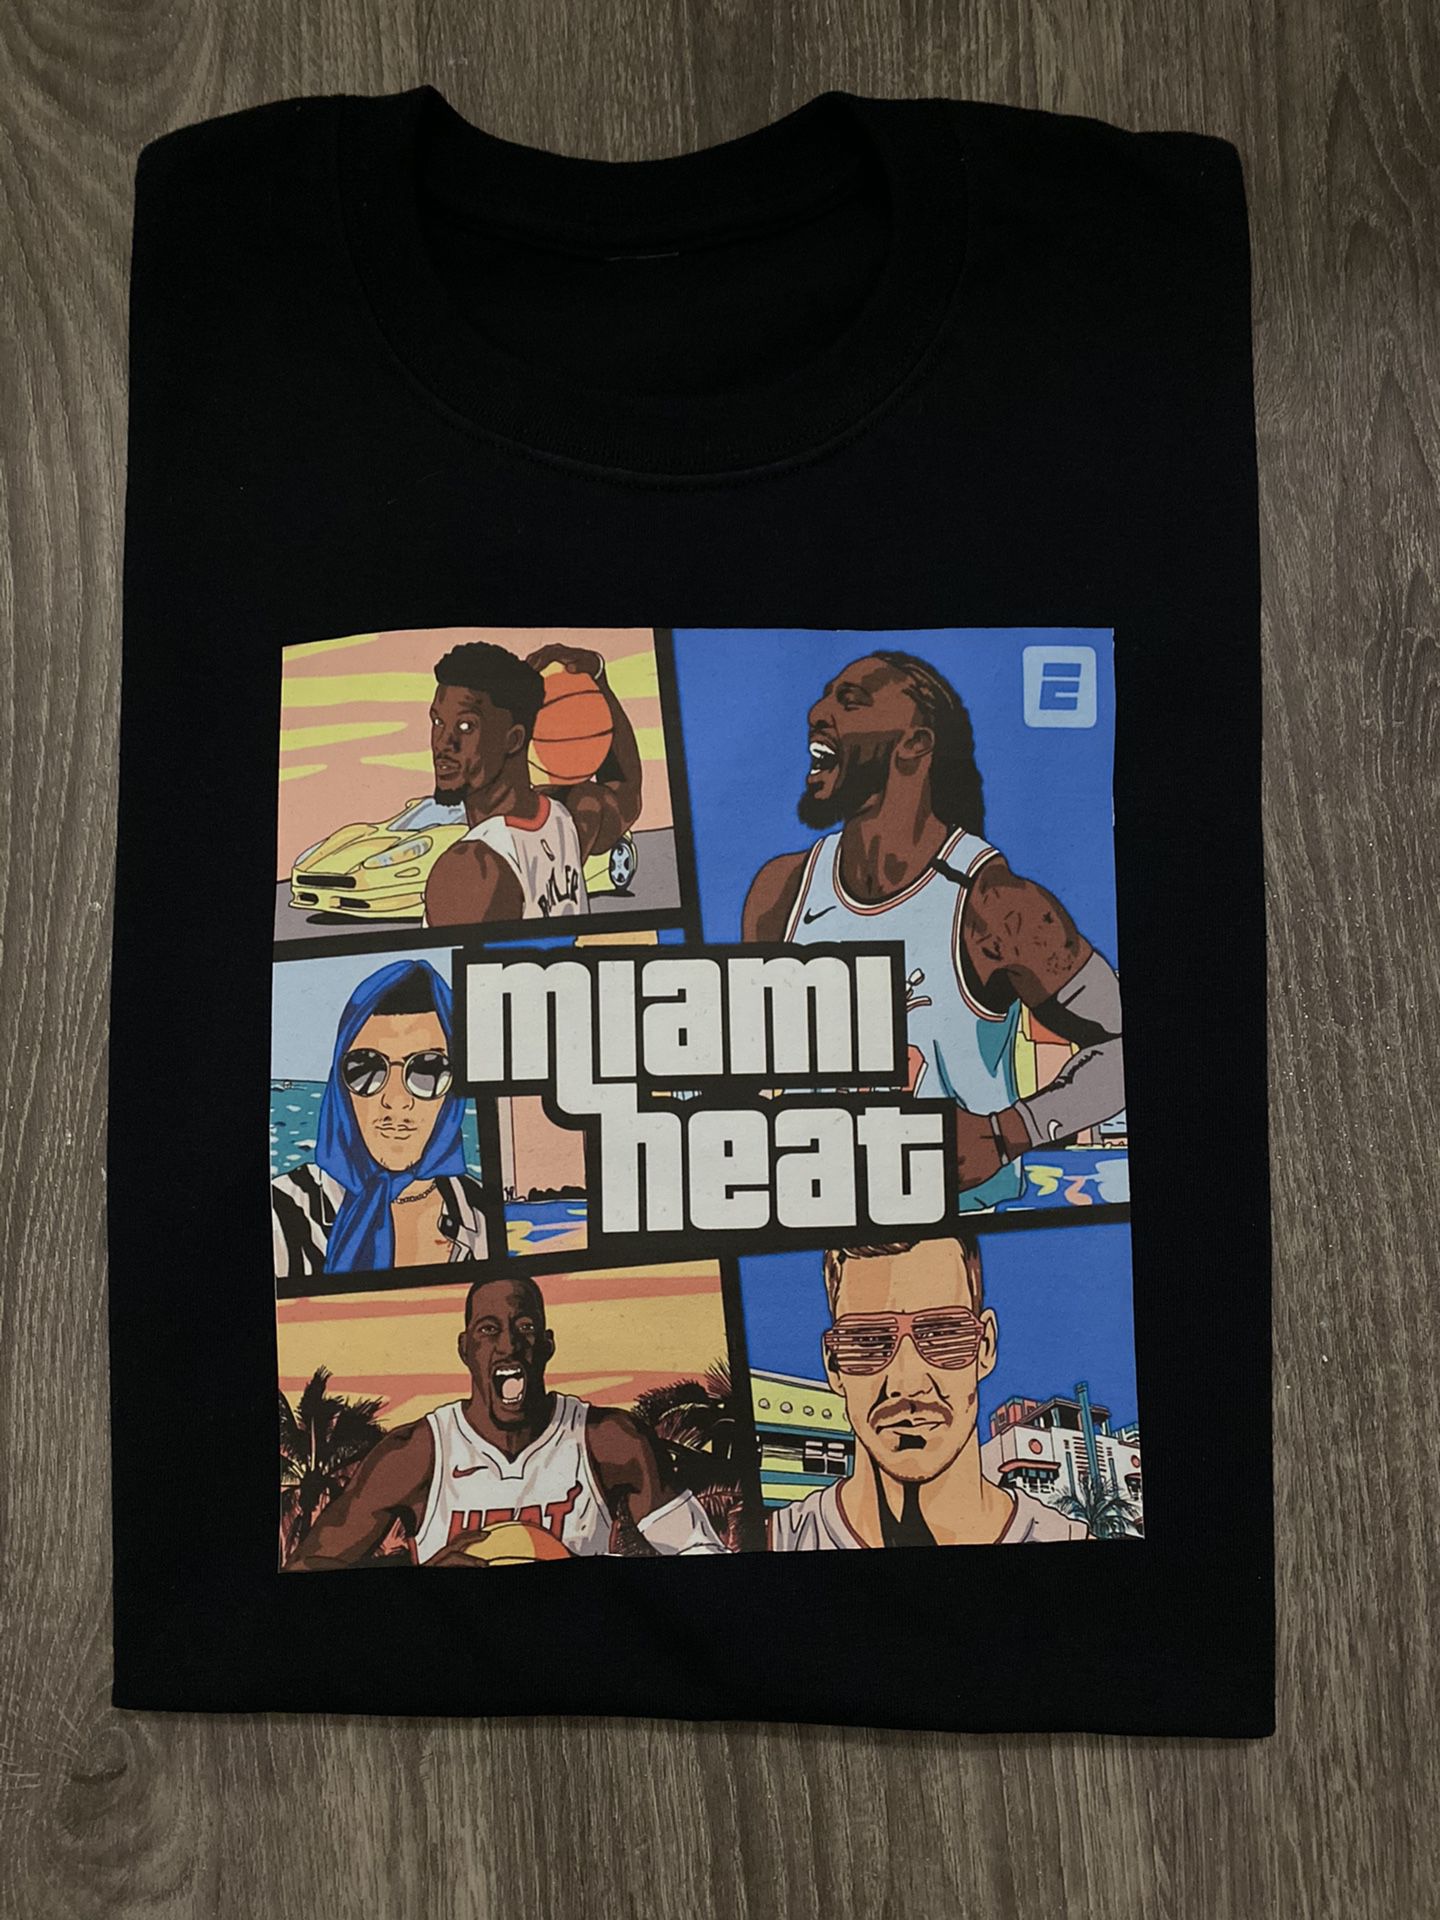 New Miami Heat shirt (Miami vice)